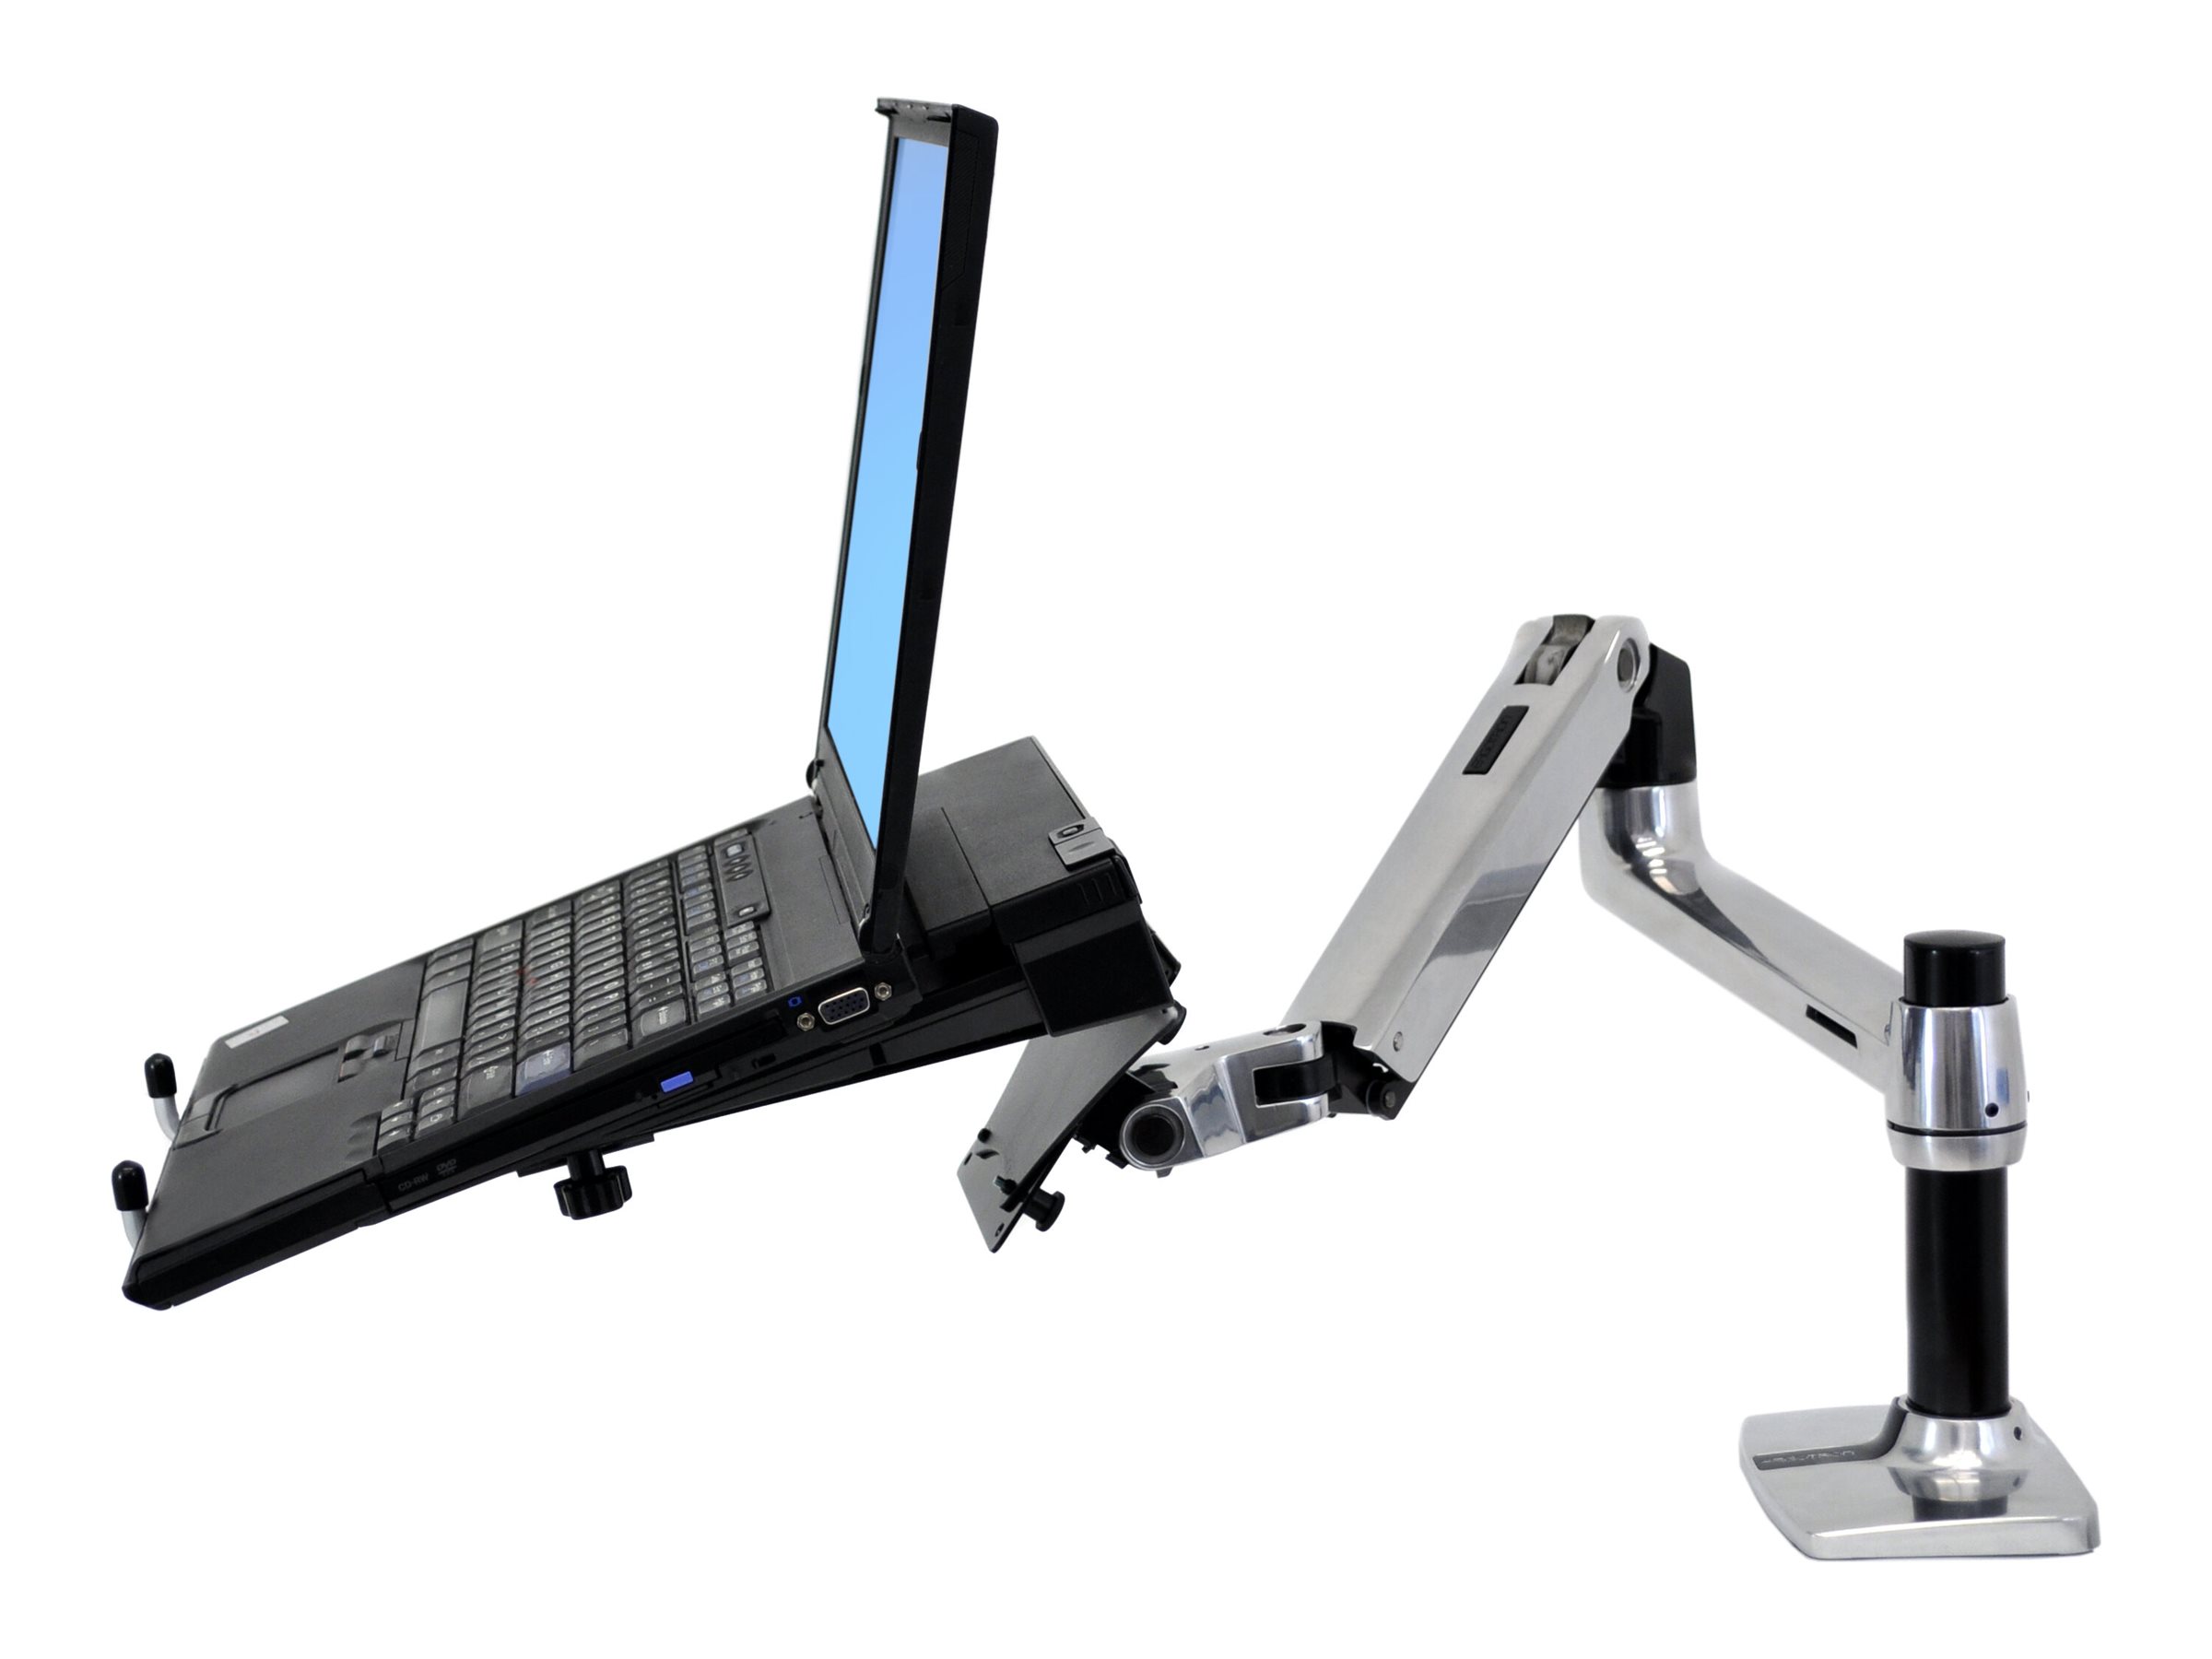 Ergotron - Plateau sur bras articulé pour ordinateur portable - noir - pour Ergotron Bras pour écran NX; LX bi-écrans juxtaposés - 50-193-200 - Accessoires pour ordinateur portable et tablette